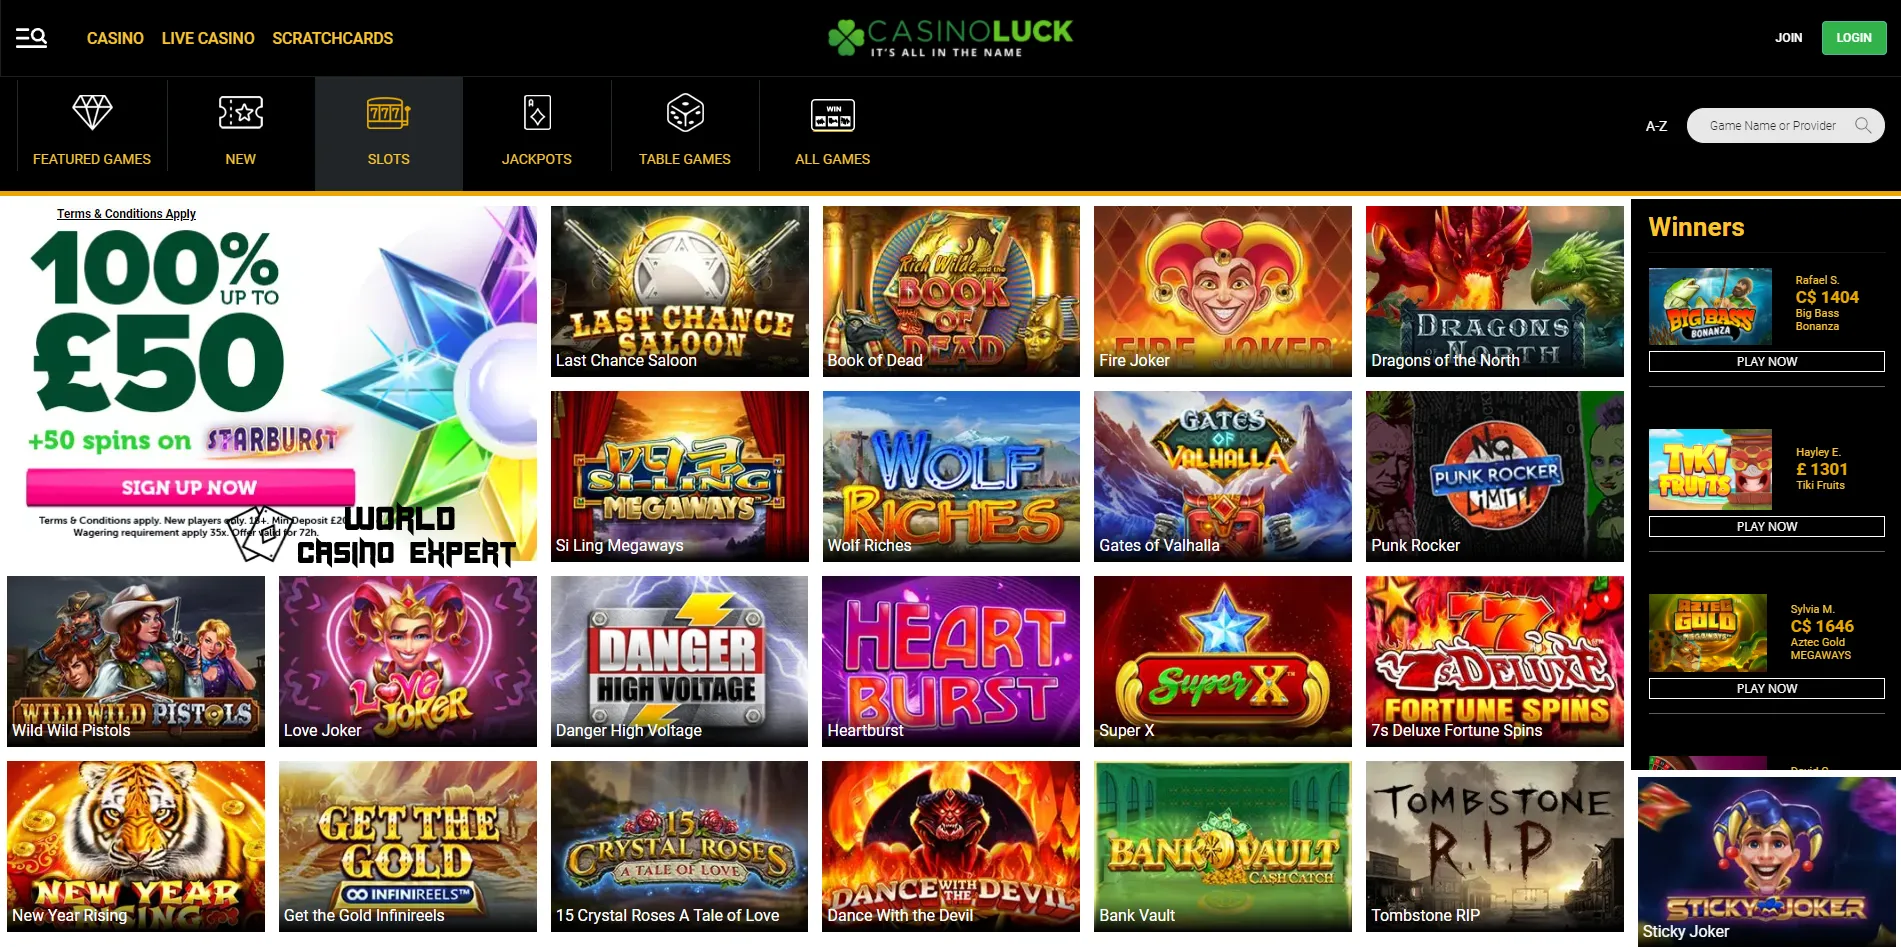 Spiele und Anbieter bei CasinoLuck | World Casino Expert